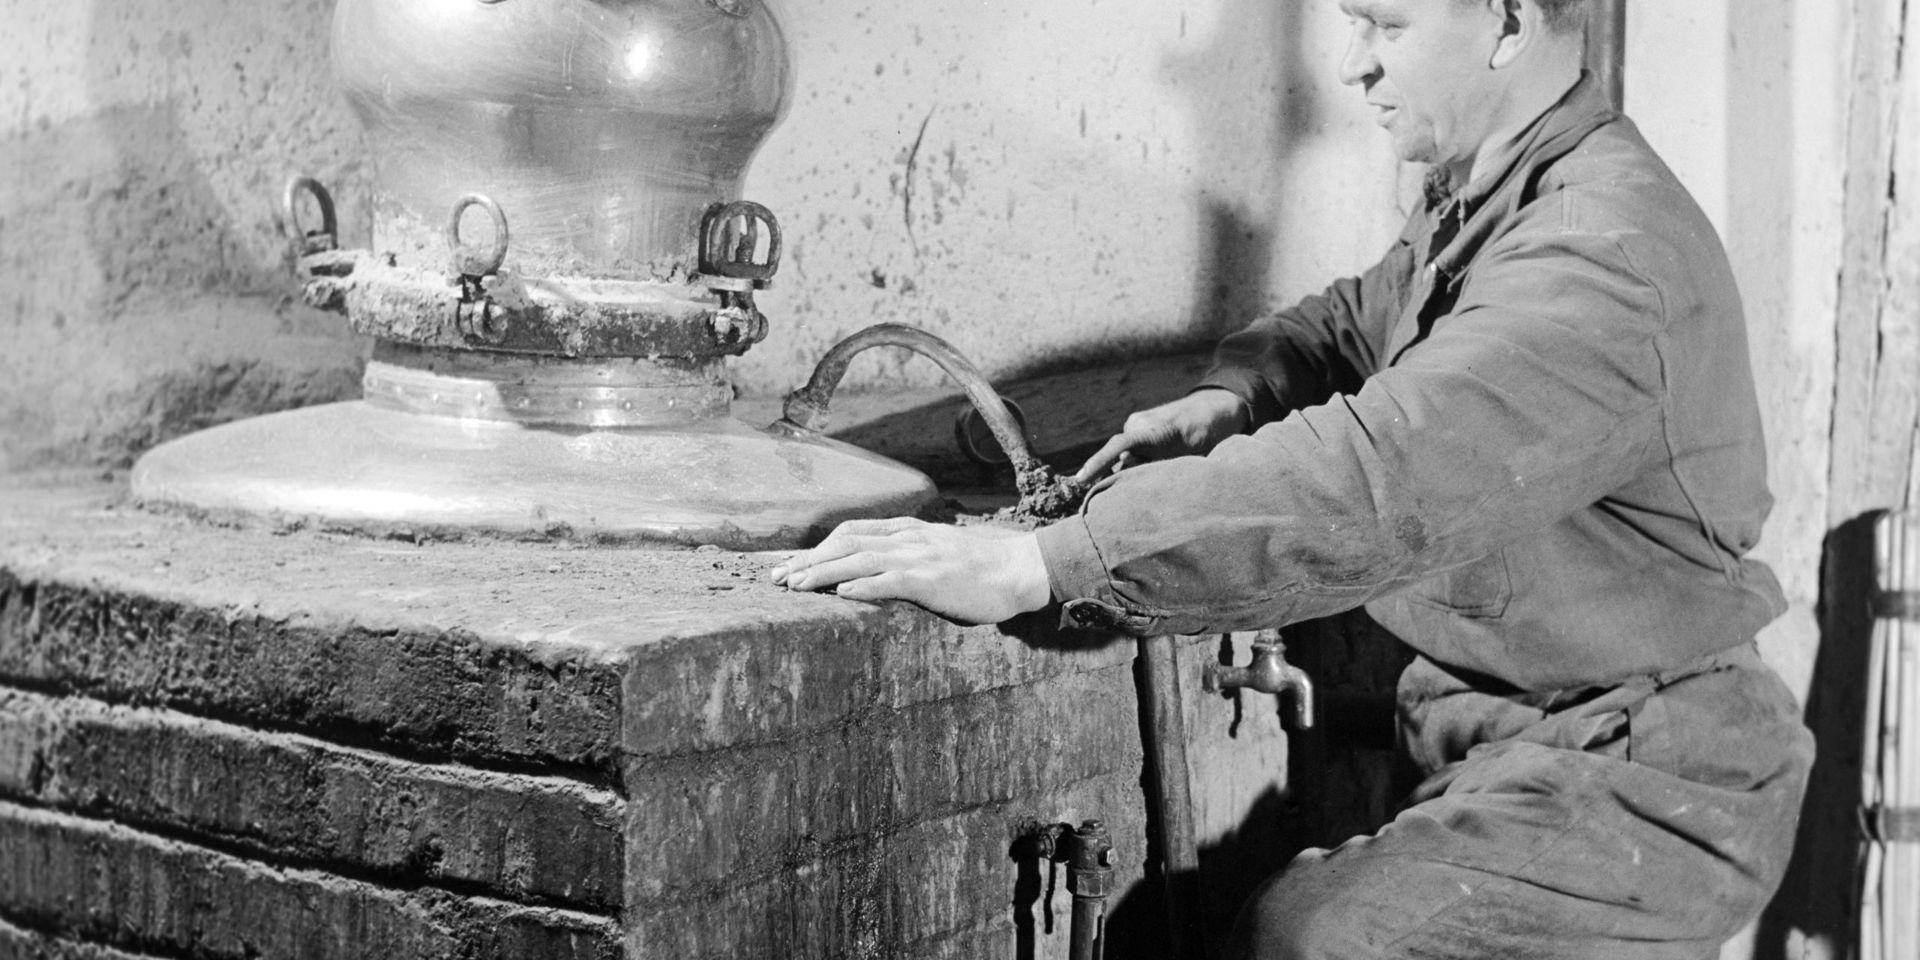 Brännandet av fruktspriten palinka har gamla anor i Ungern. Här destilleras det vid ett gammalt jordbrukskooperativ i Ostoros år 1957. Arkivbild.